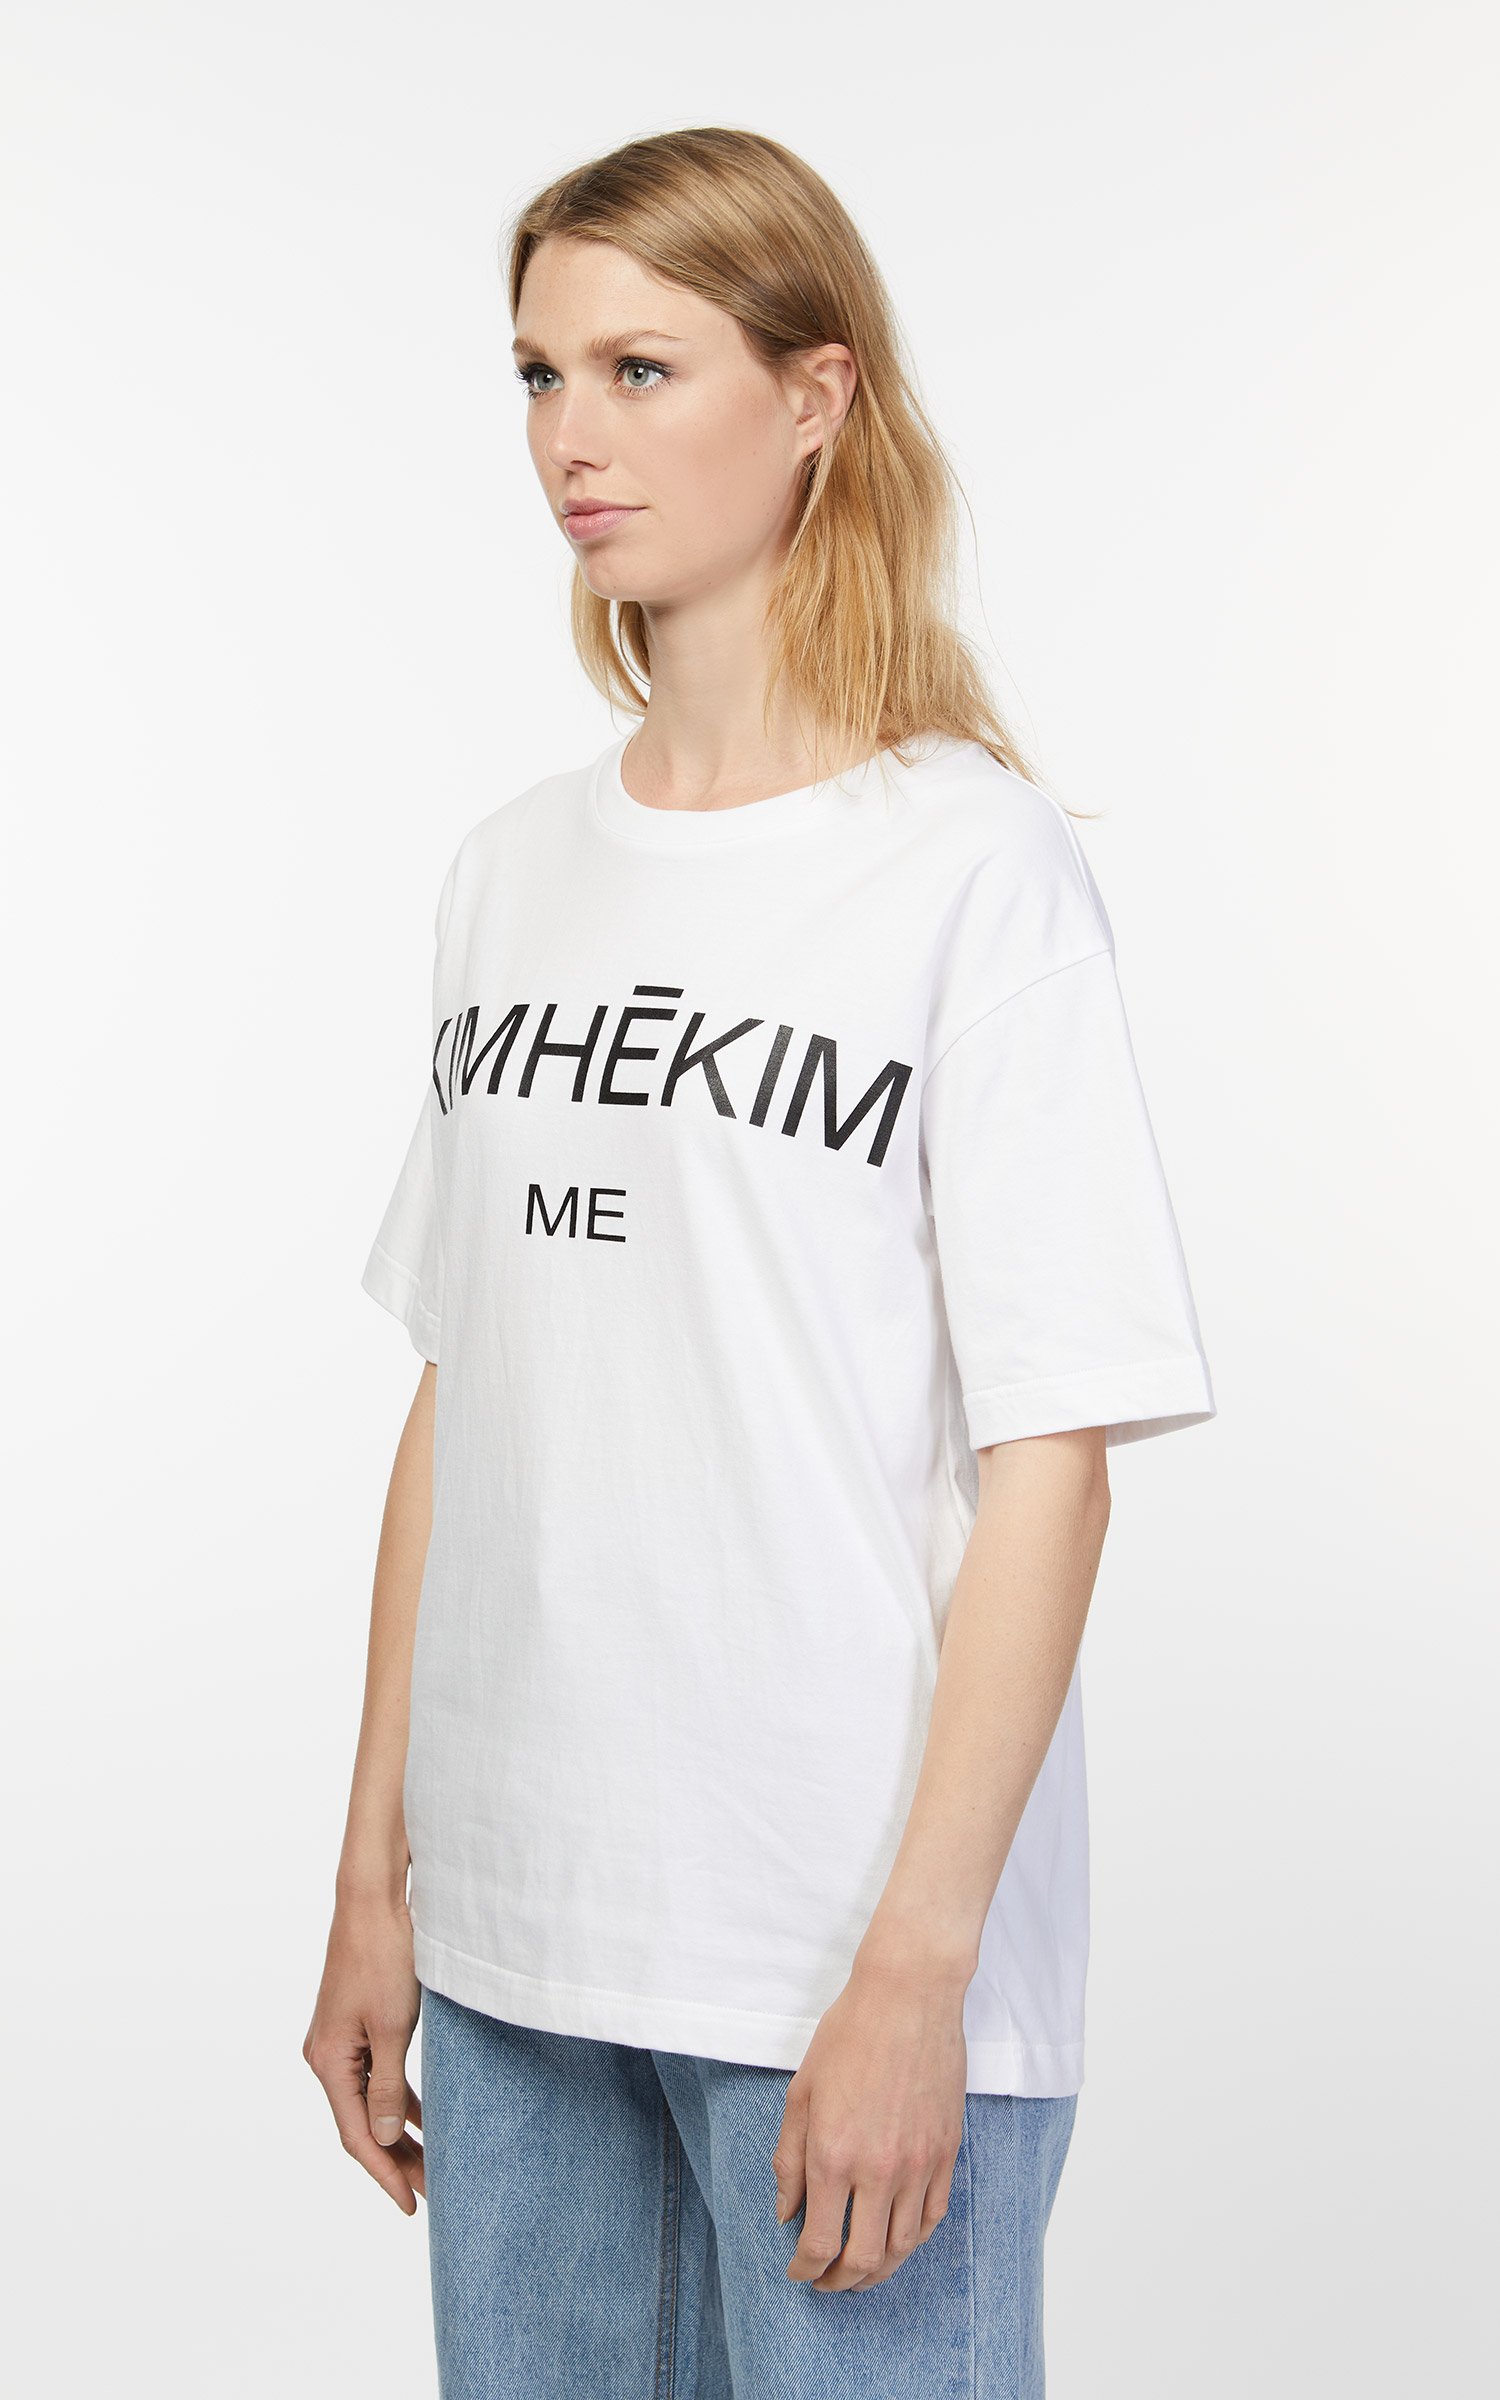 KIMHEKIM Kimhekim Me T-Shirt White | Cultizm